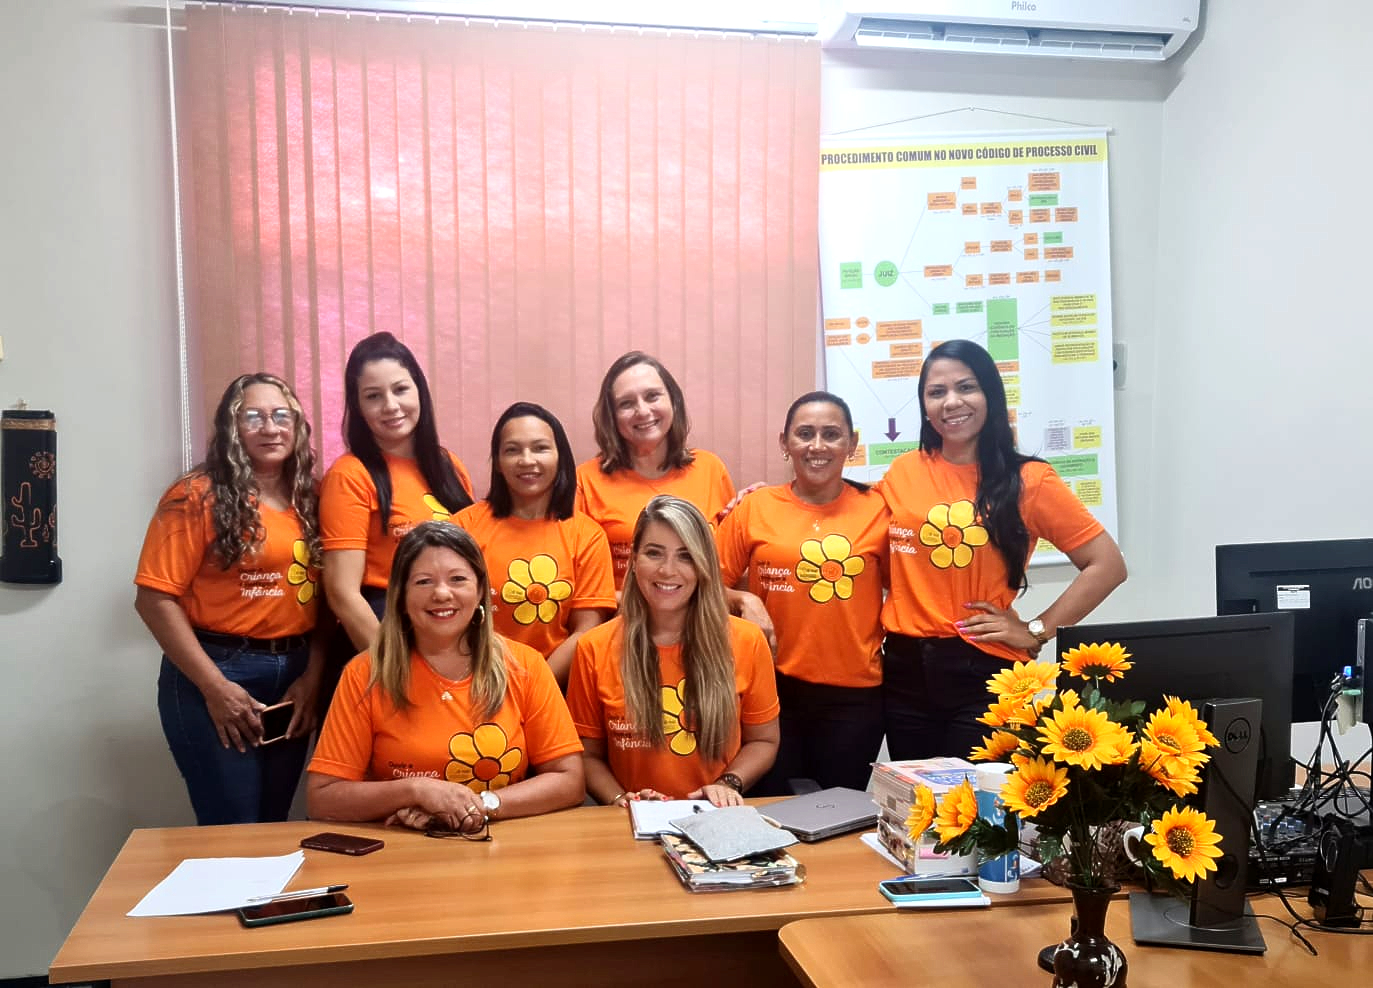 Foto retangular. Mulheres vestidas com camisas laranja da campanha Maio Laranja, com desenho linear de flor, com pétalas amarelas e miolo laranja, em sala fechada.